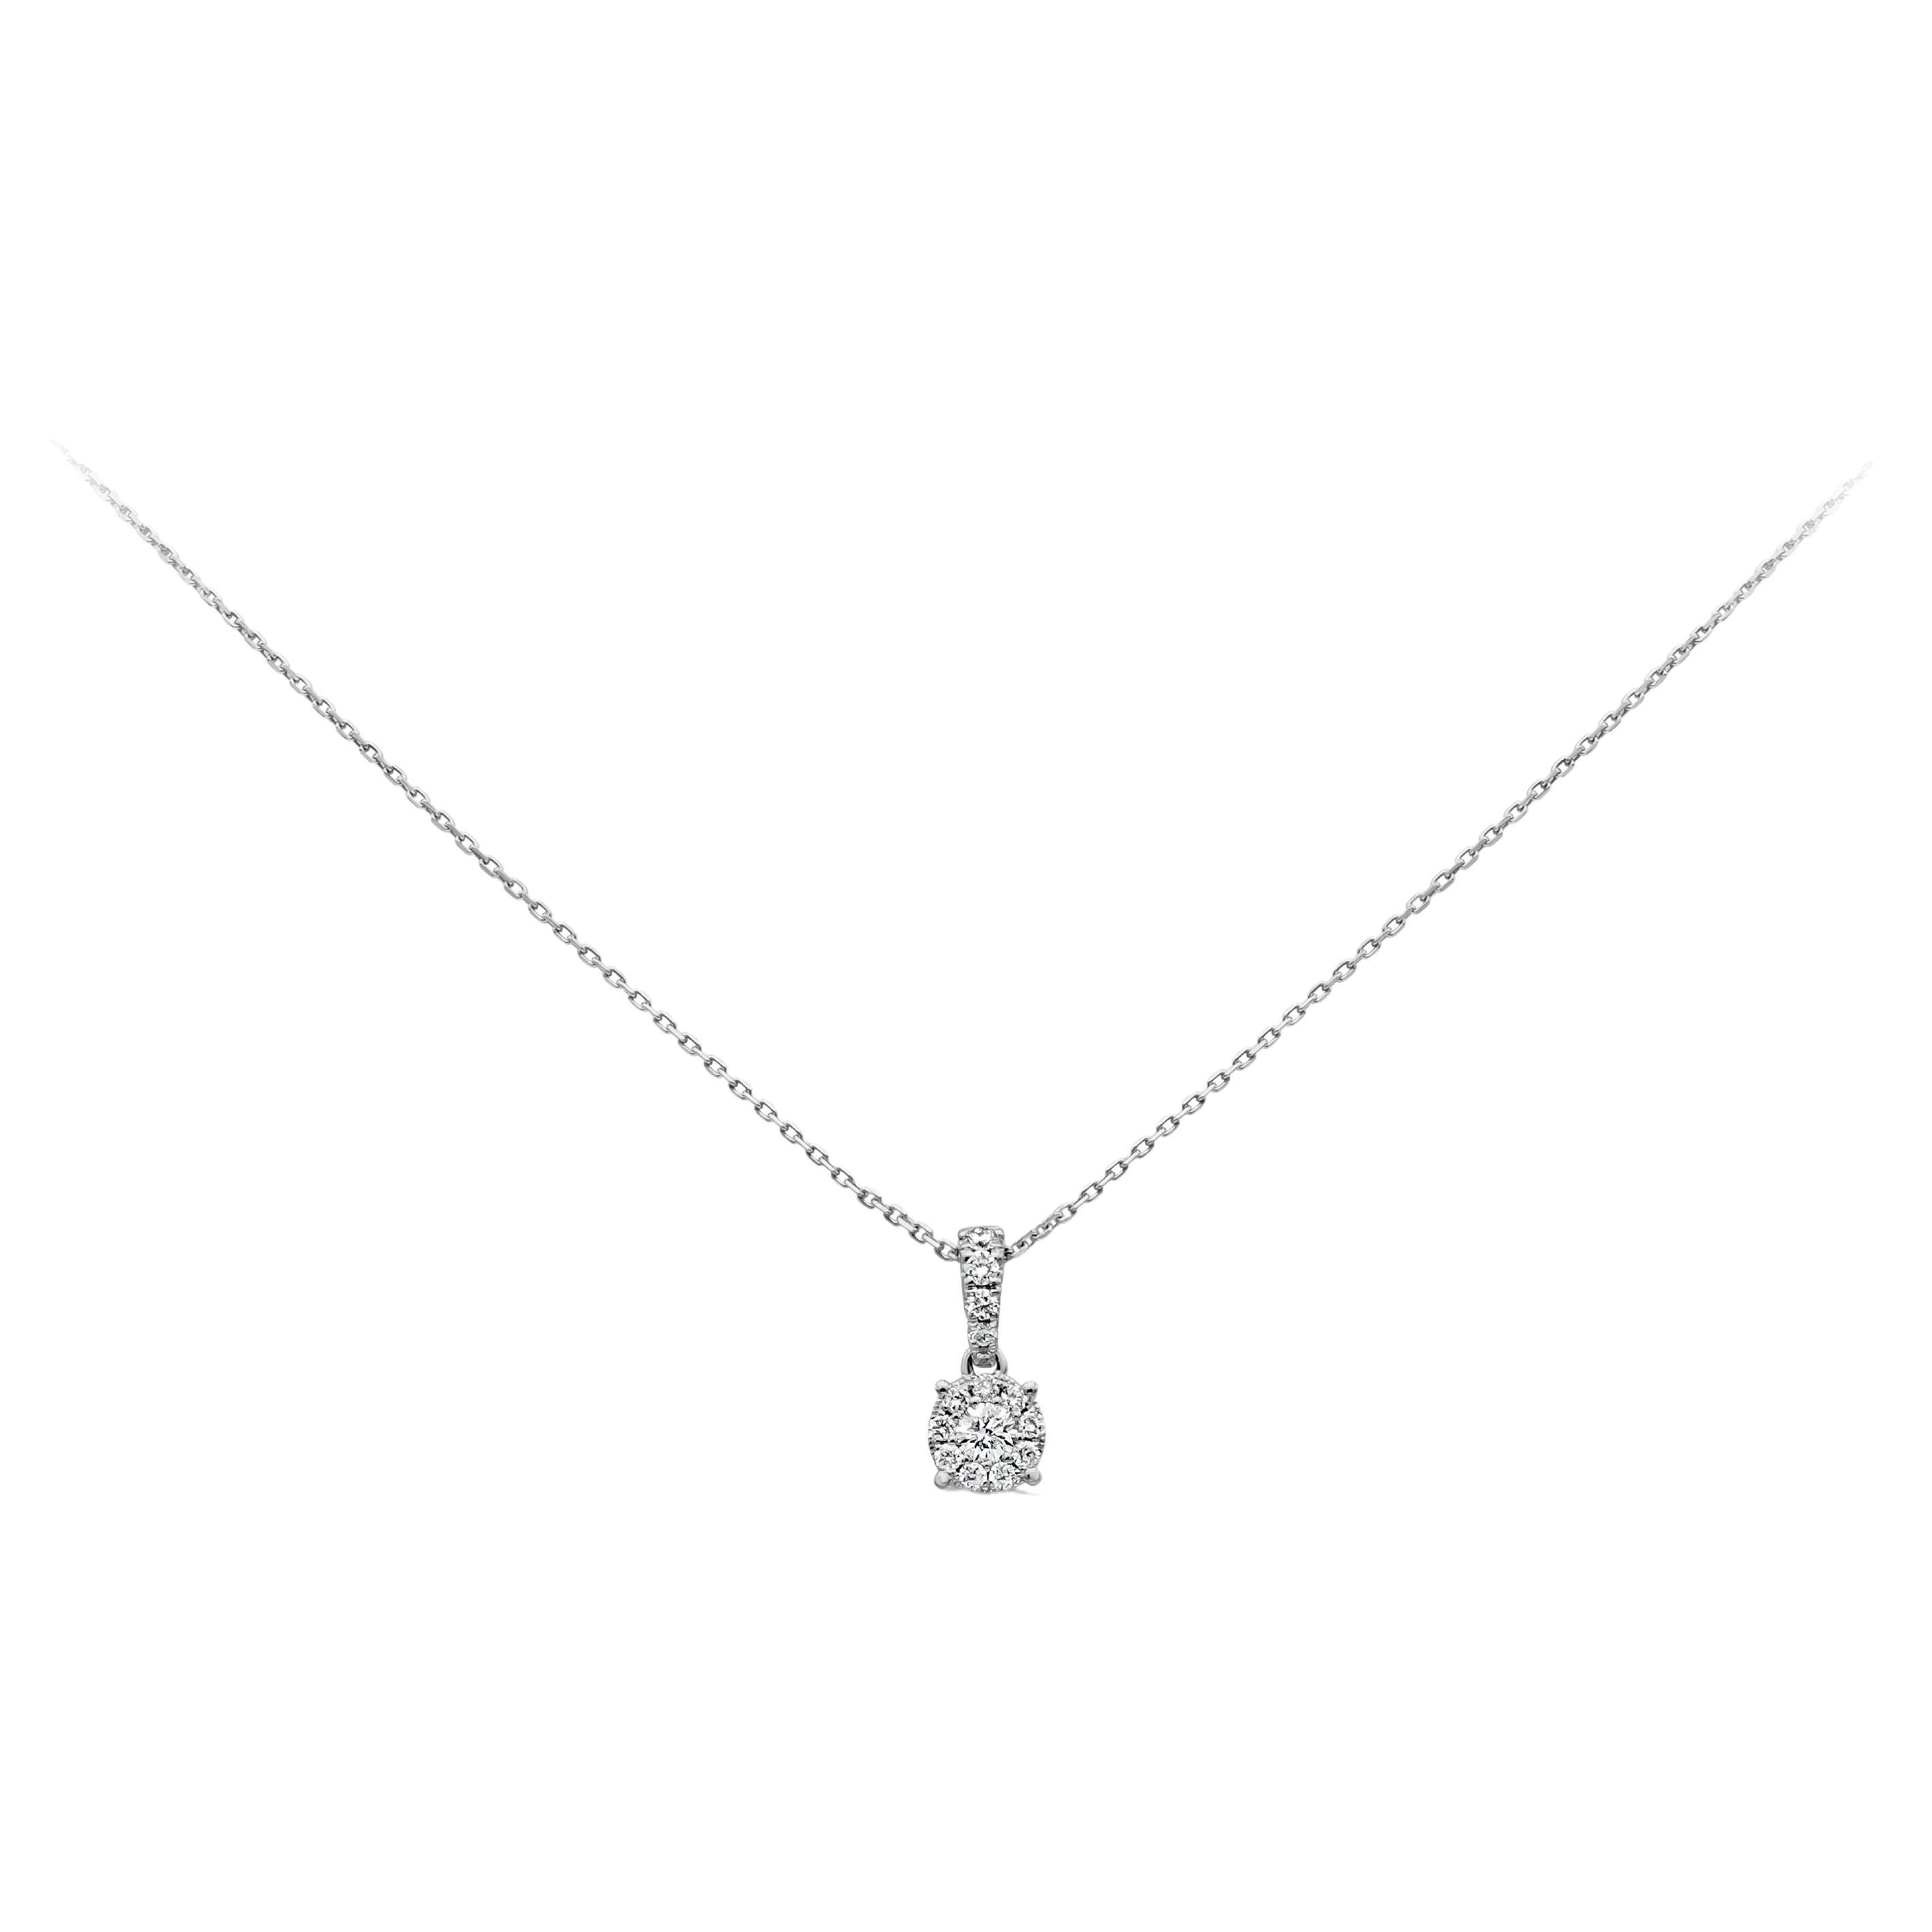 Roman Malakov, collier pendentif illusion avec diamants ronds de 0,23 carat au total